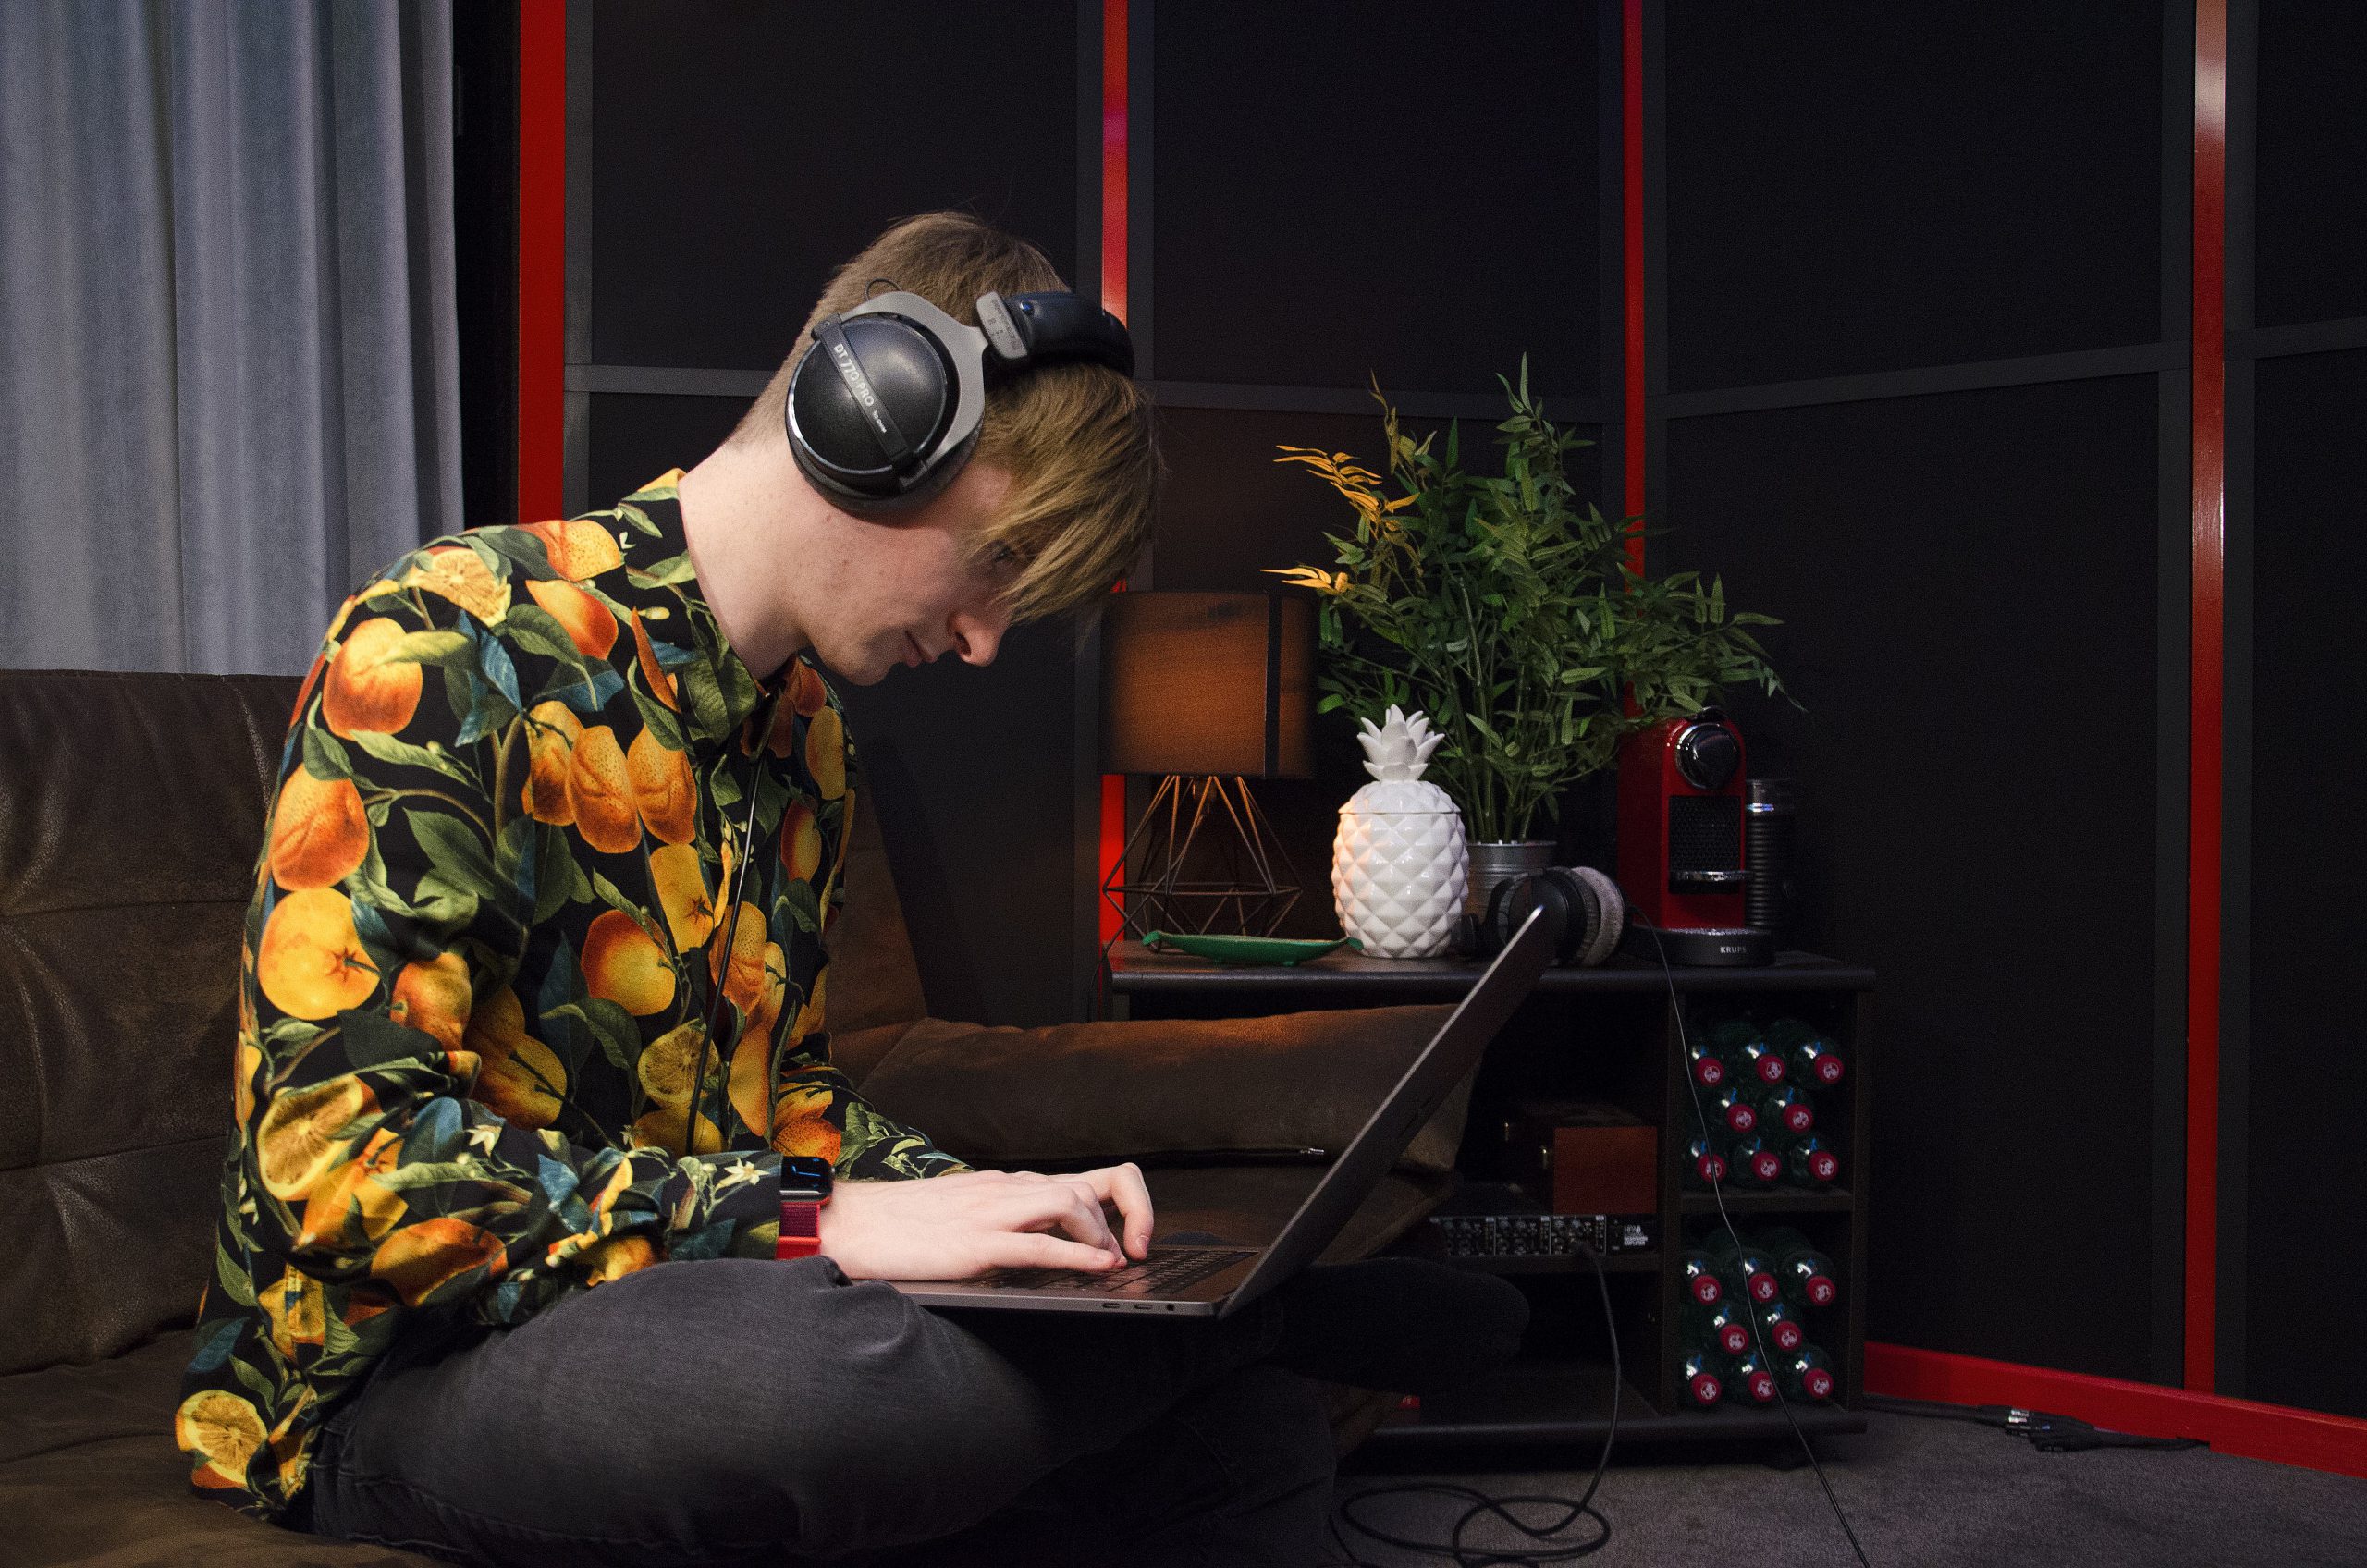 Musikproduzent Lukas Lach in seinem Studio mit Kopfhörer